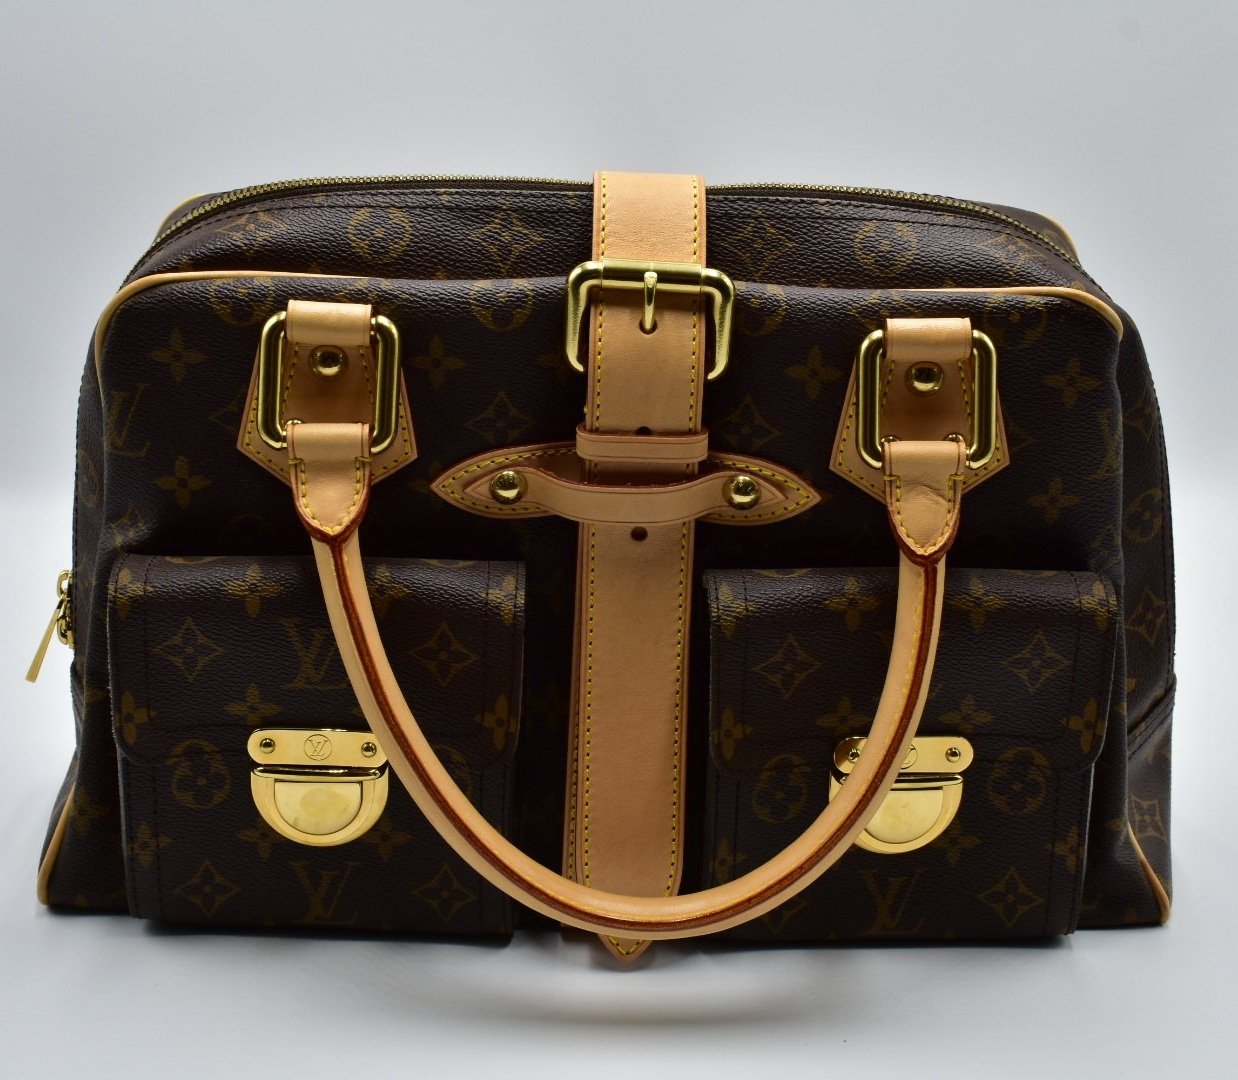 Louis Vuitton - Bloomsbury PM Shoulder bag - Catawiki